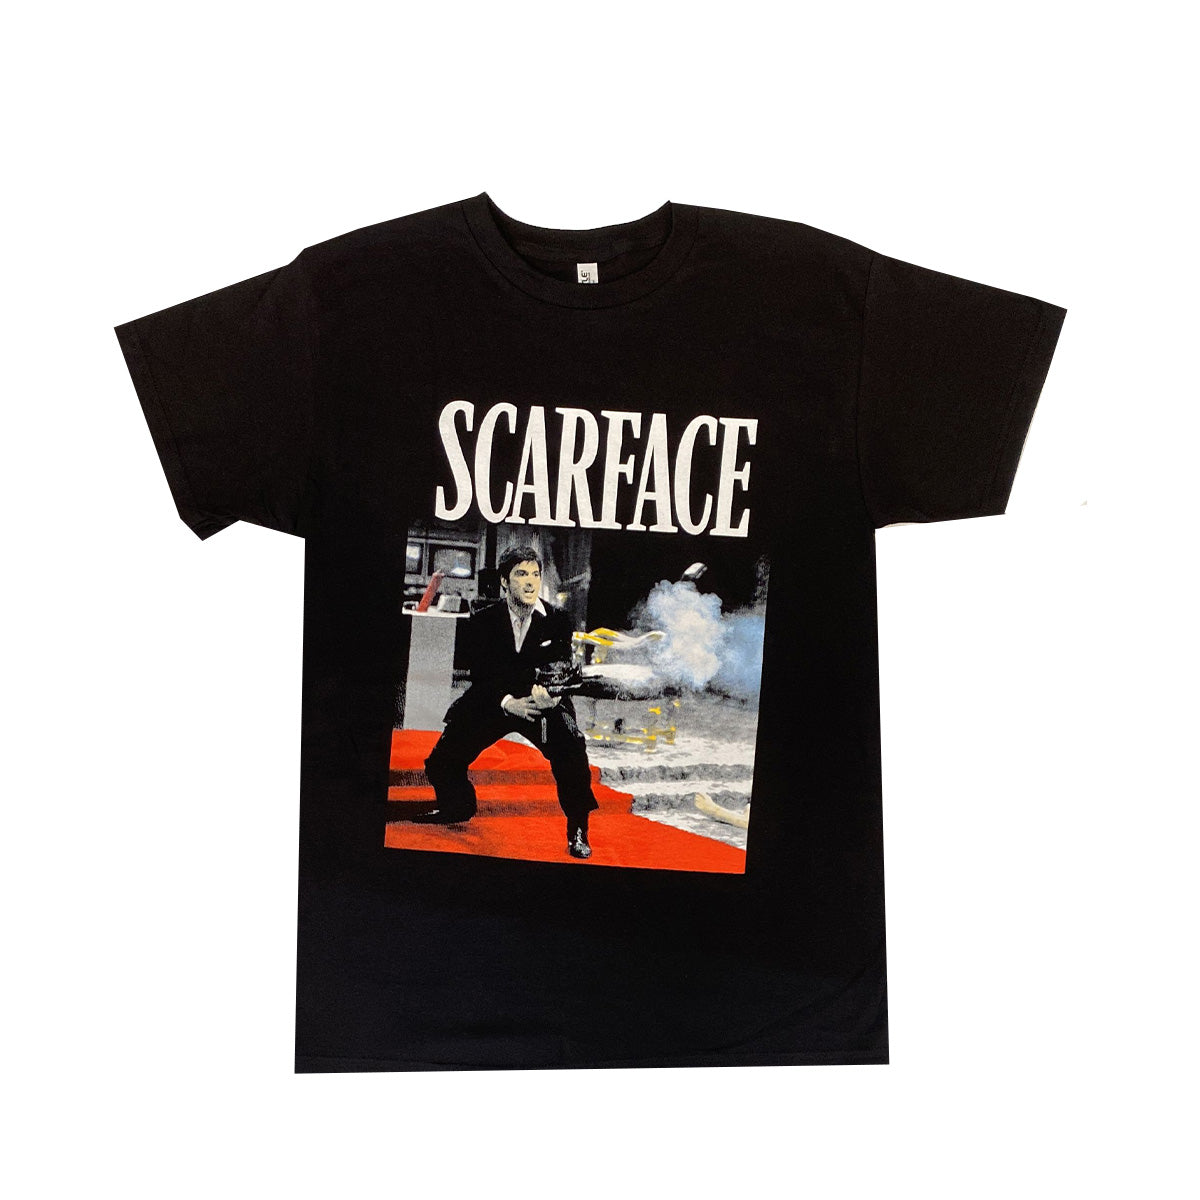 Camiseta Scarface 100% Algodón, Pack de 5 Unidades, M, L, XL, XXL, XXXL